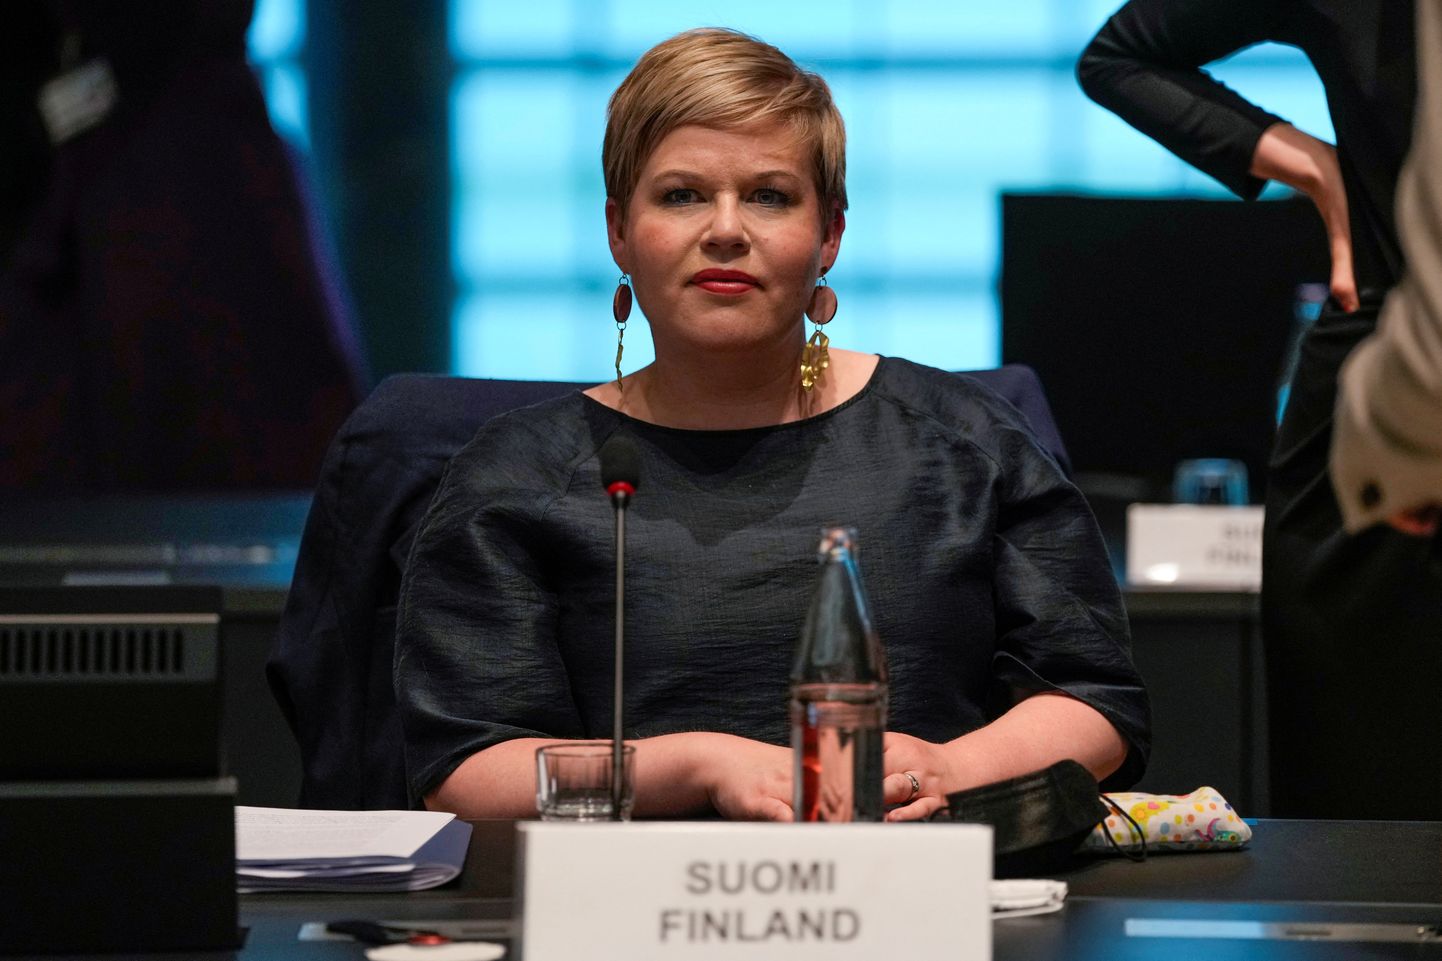 Soome rahandusminister Annika Saarikko 17. juunil 2021 Luksemburgis Eurogroupi rahandusministrite kohtumisel